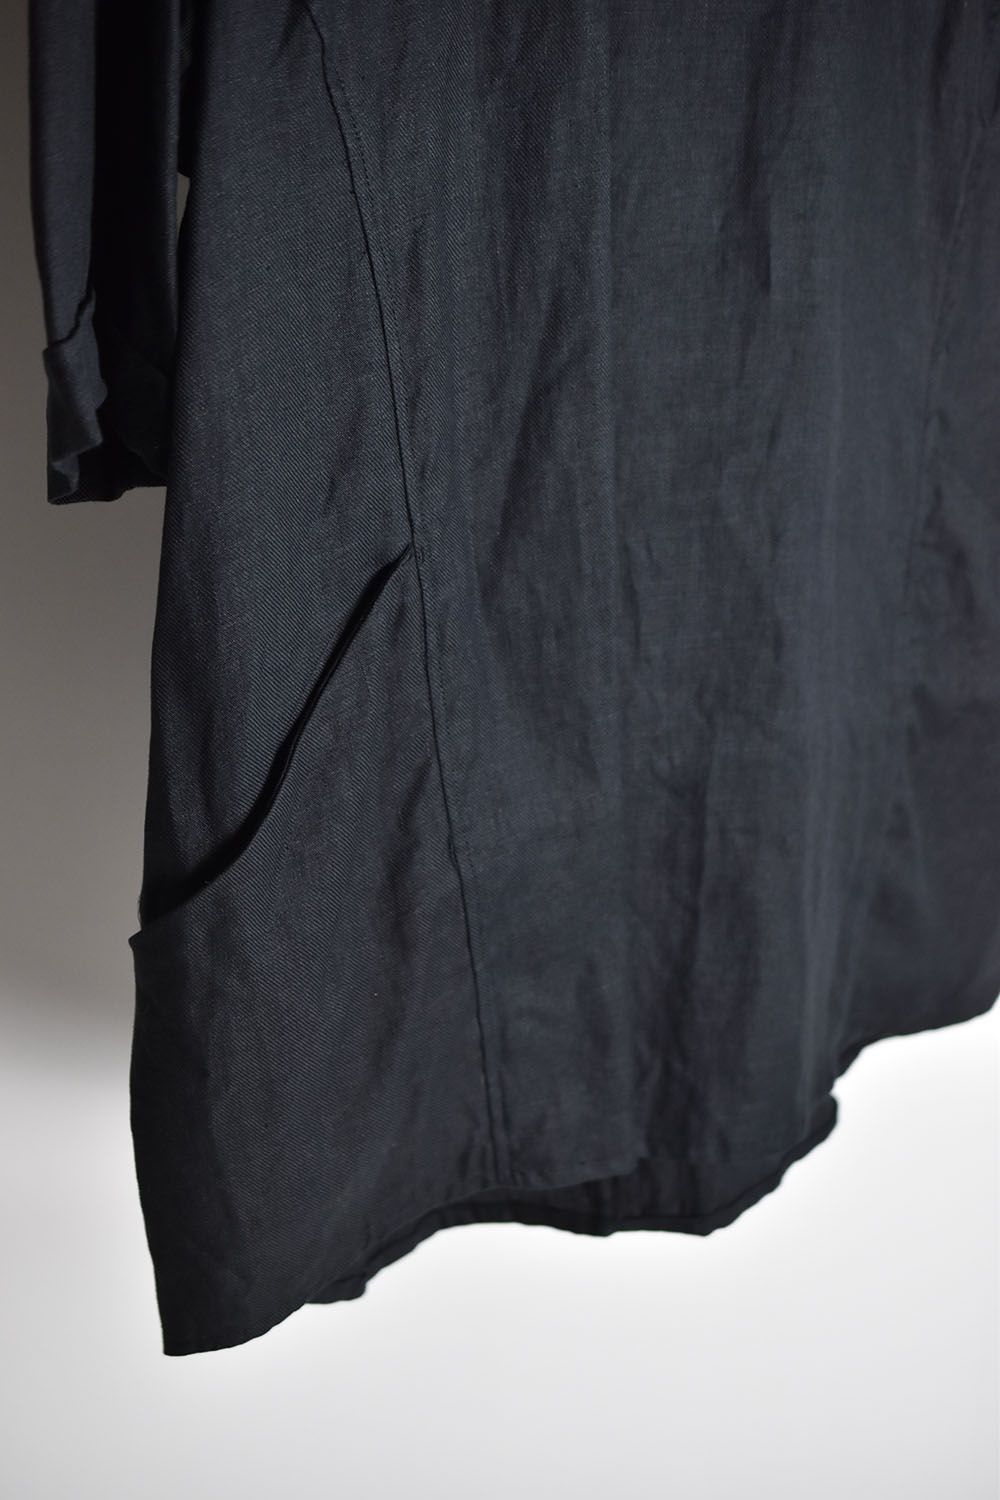 Solid Shirts Tee"Black"/ソリッドシャツTee"ブラック"